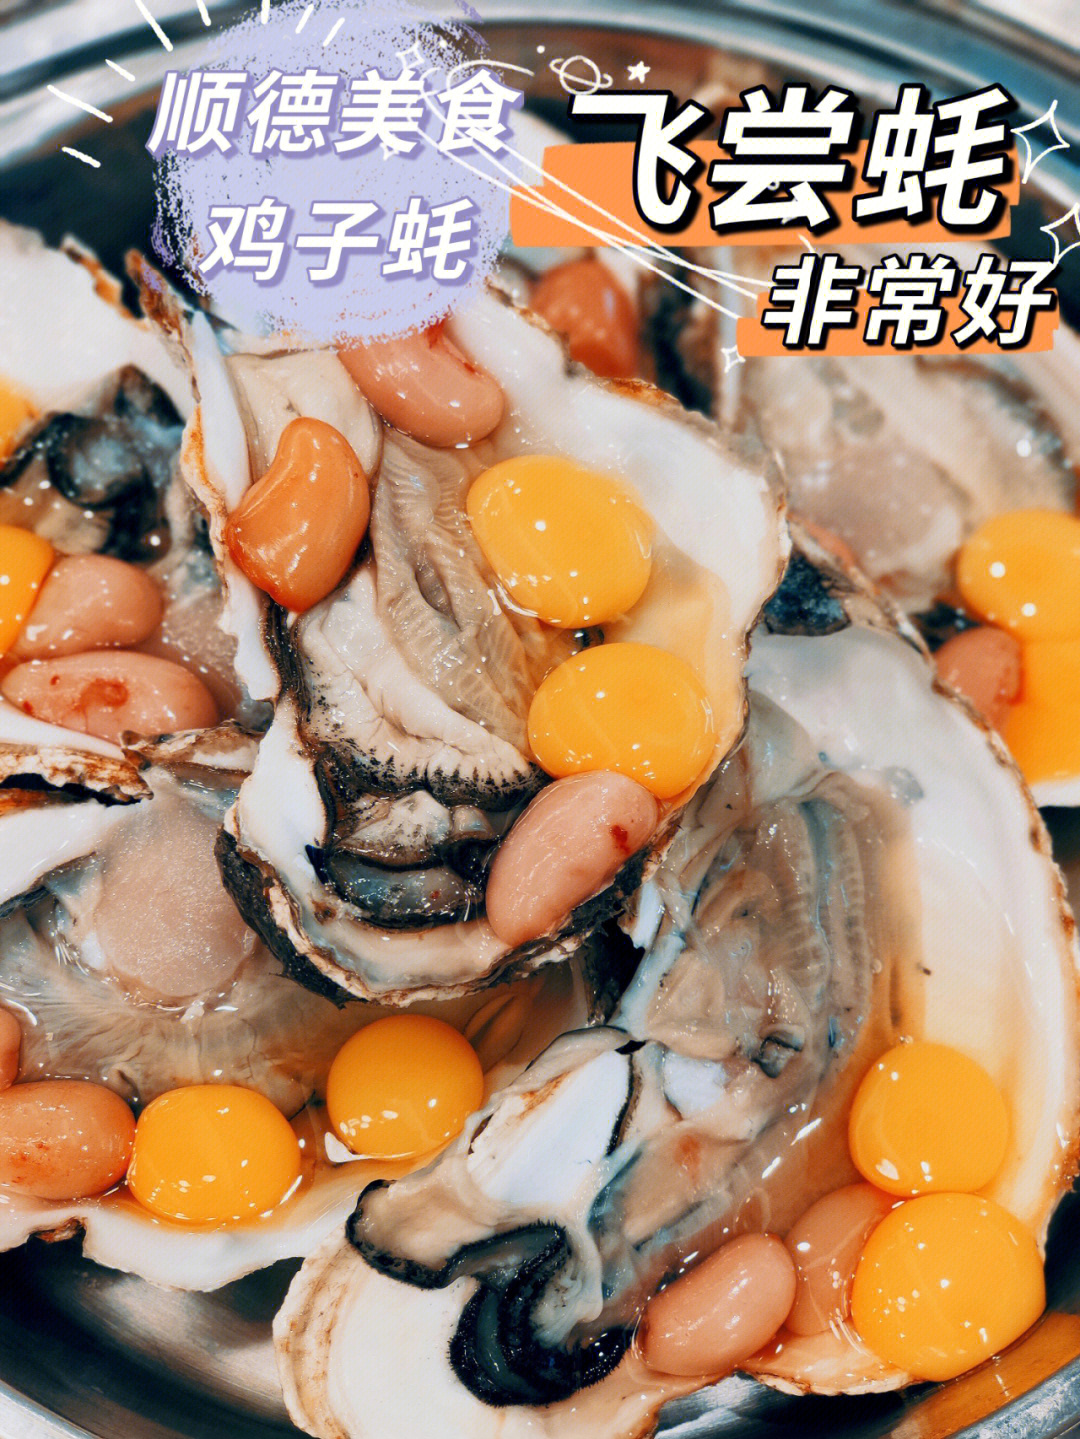 呢次发现这家顺德菜简直一级棒在广州竟然有这么特色的生蚝超补哦哈哈